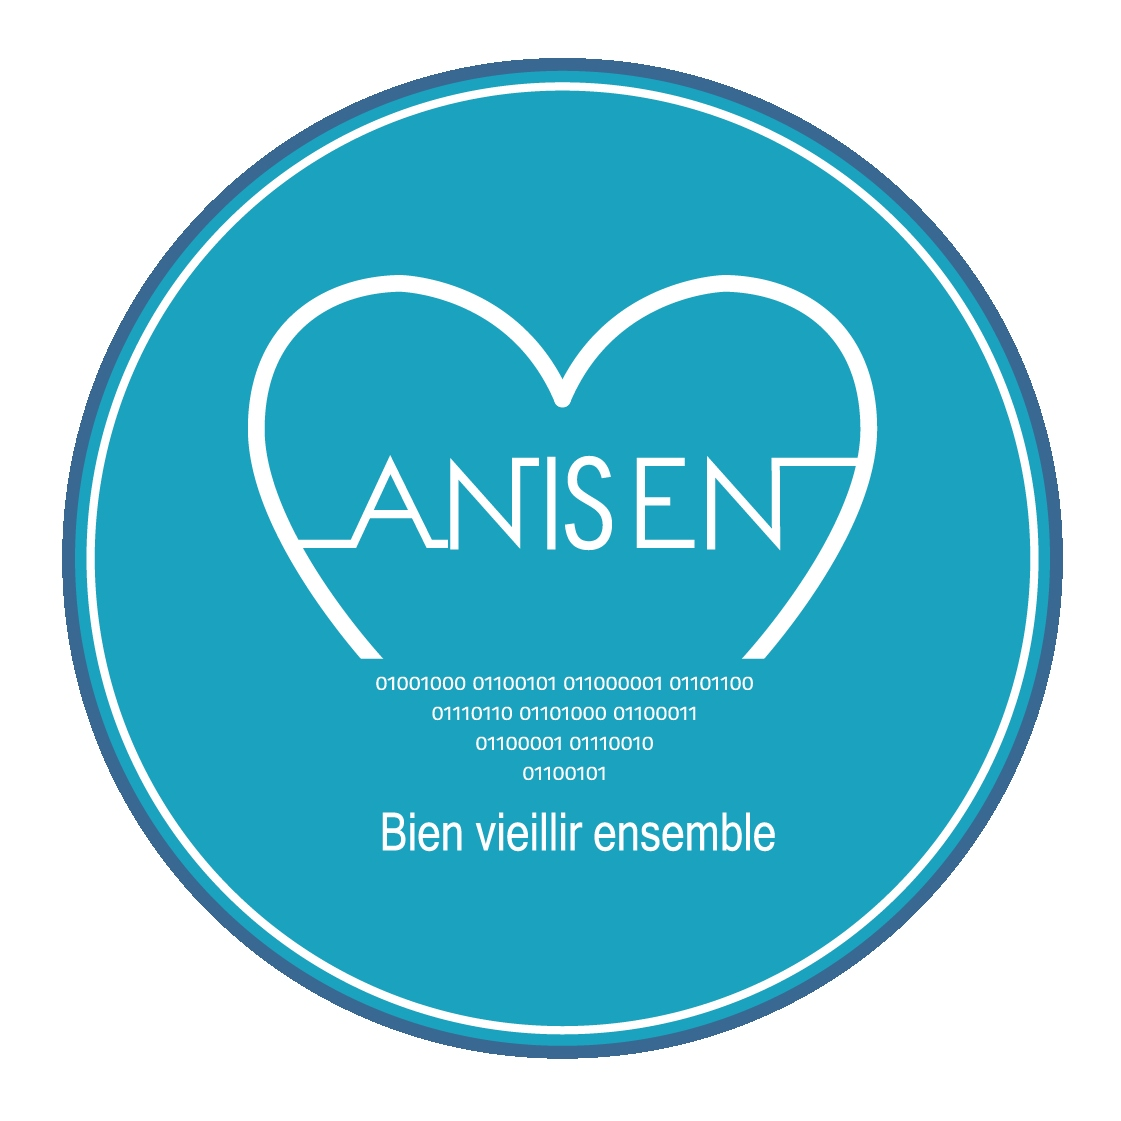 Notre partenaire : Anisen